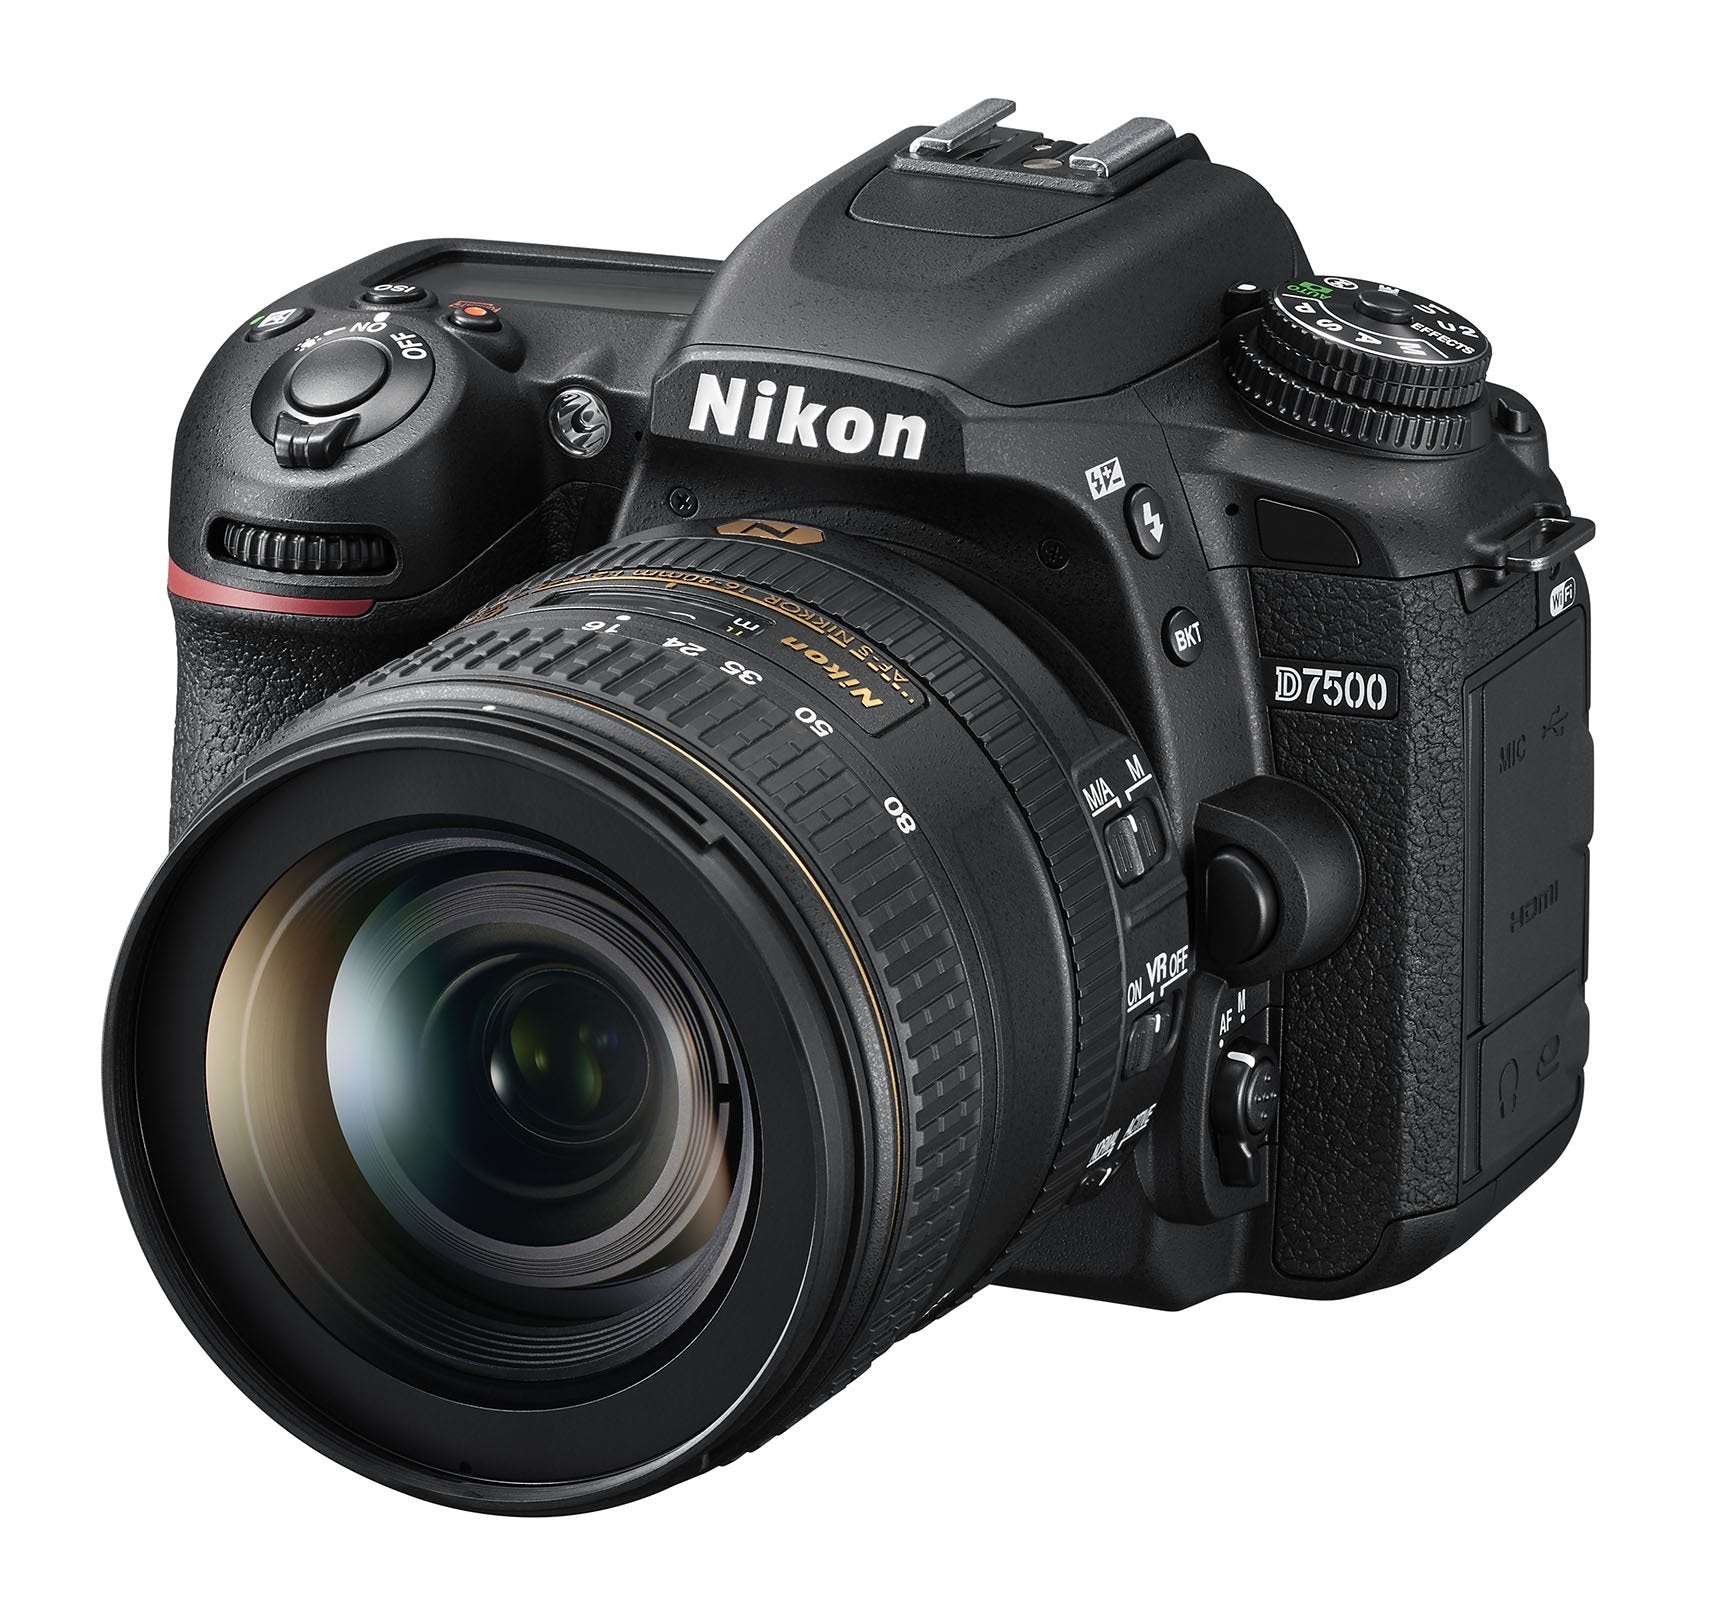 Nikon D7500 20.9MP DSLR Camera with AF-S DX NIKKOR 16-80mm f/2.8-4E ED VR Lens, Black (International Model)